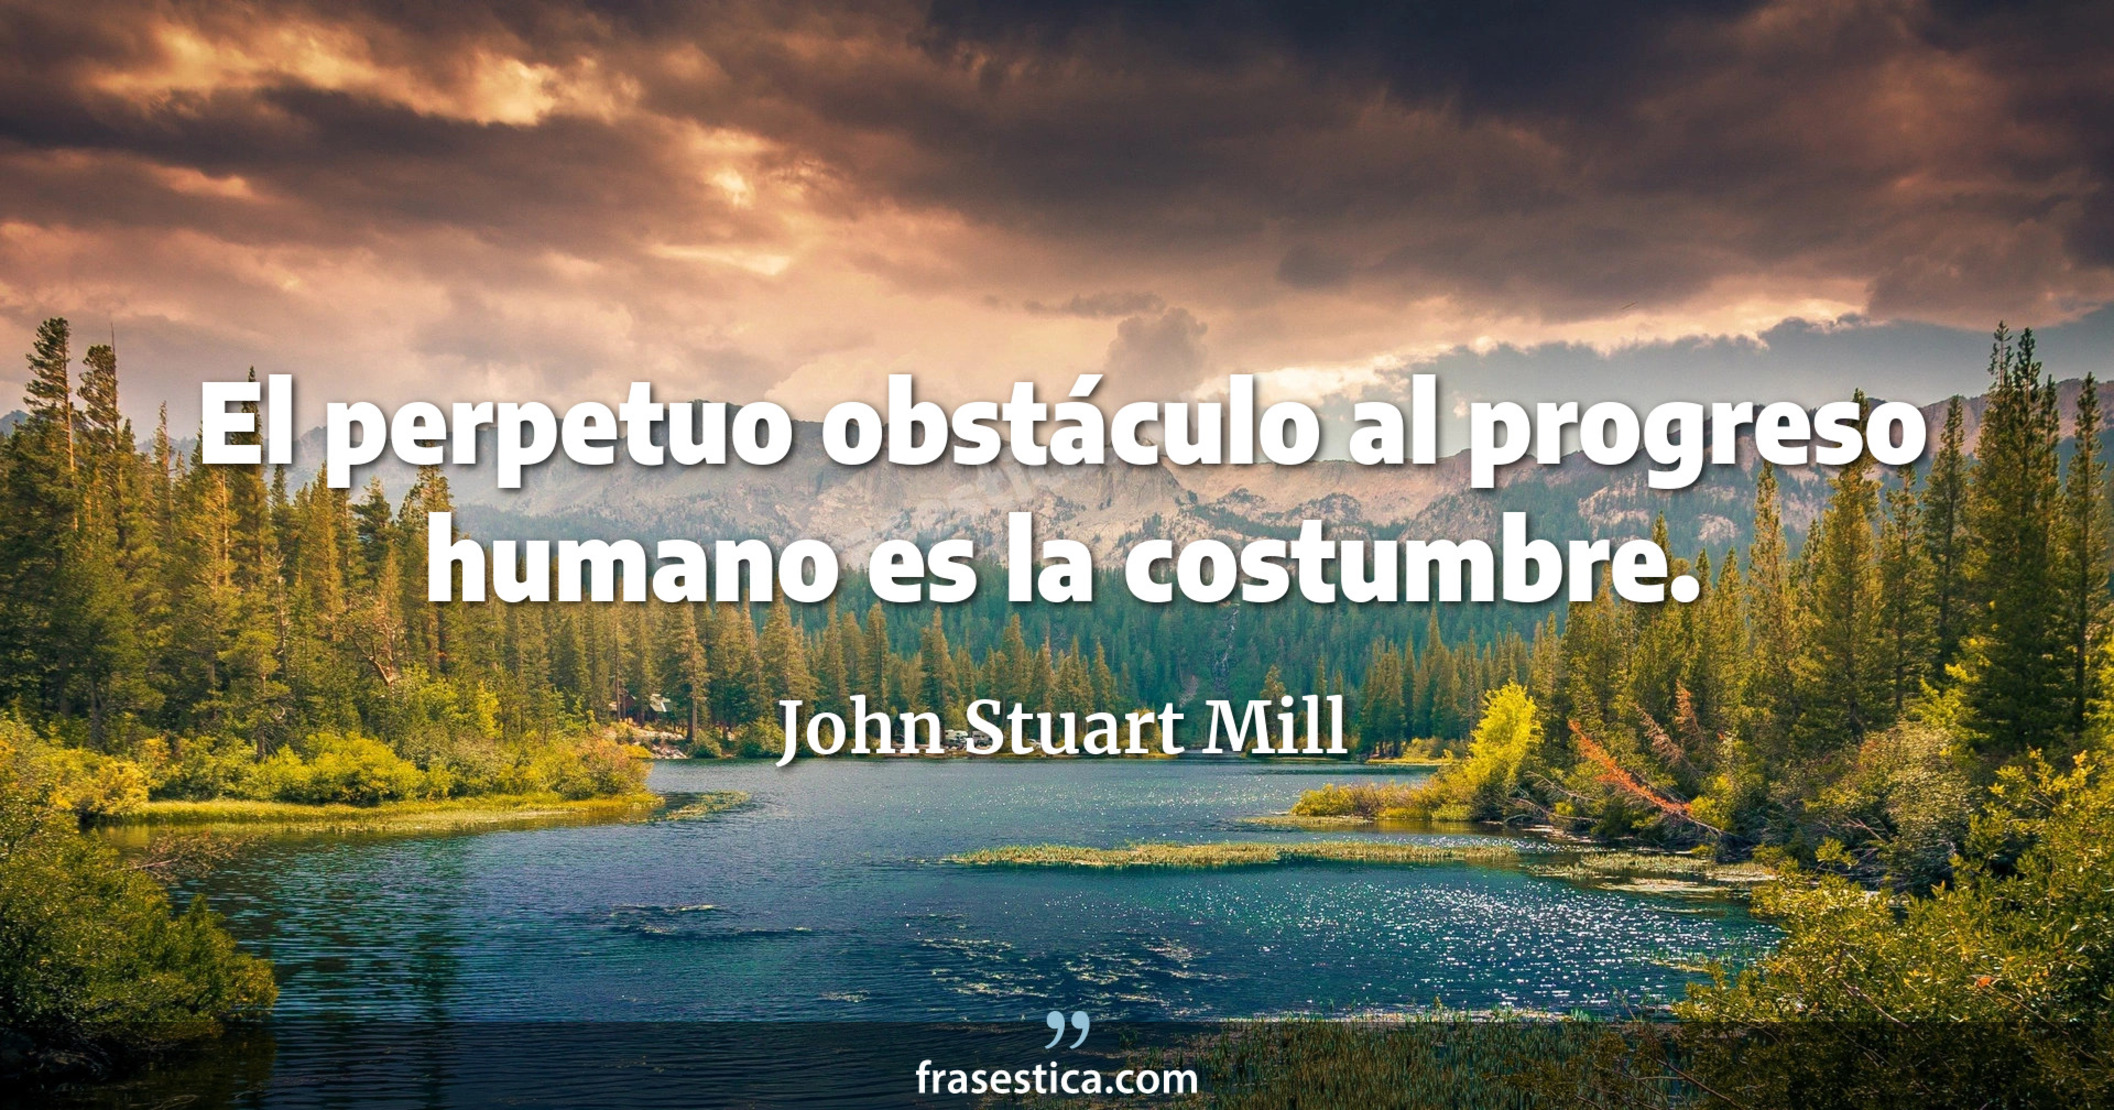 El perpetuo obstáculo al progreso humano es la costumbre. - John Stuart Mill